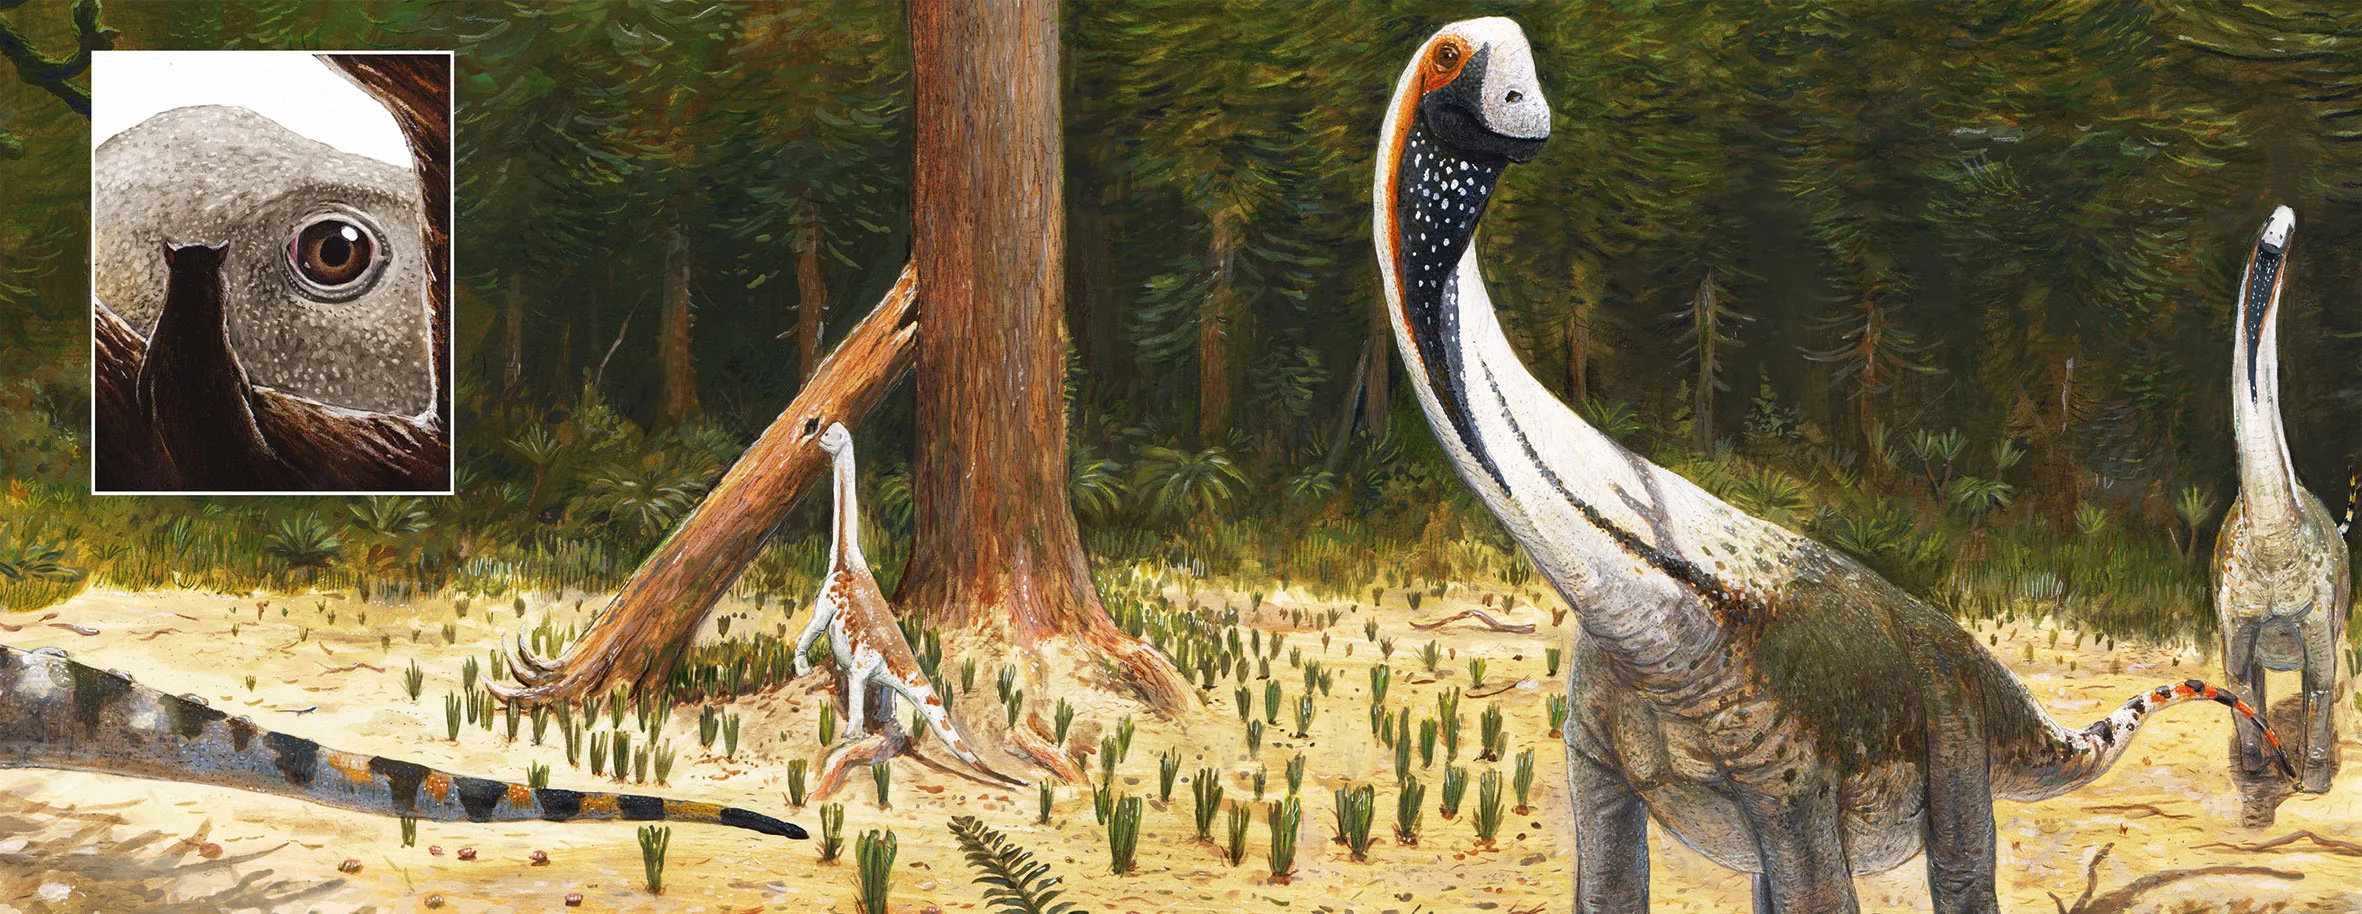 Illustration von mehreren Dinosaurier